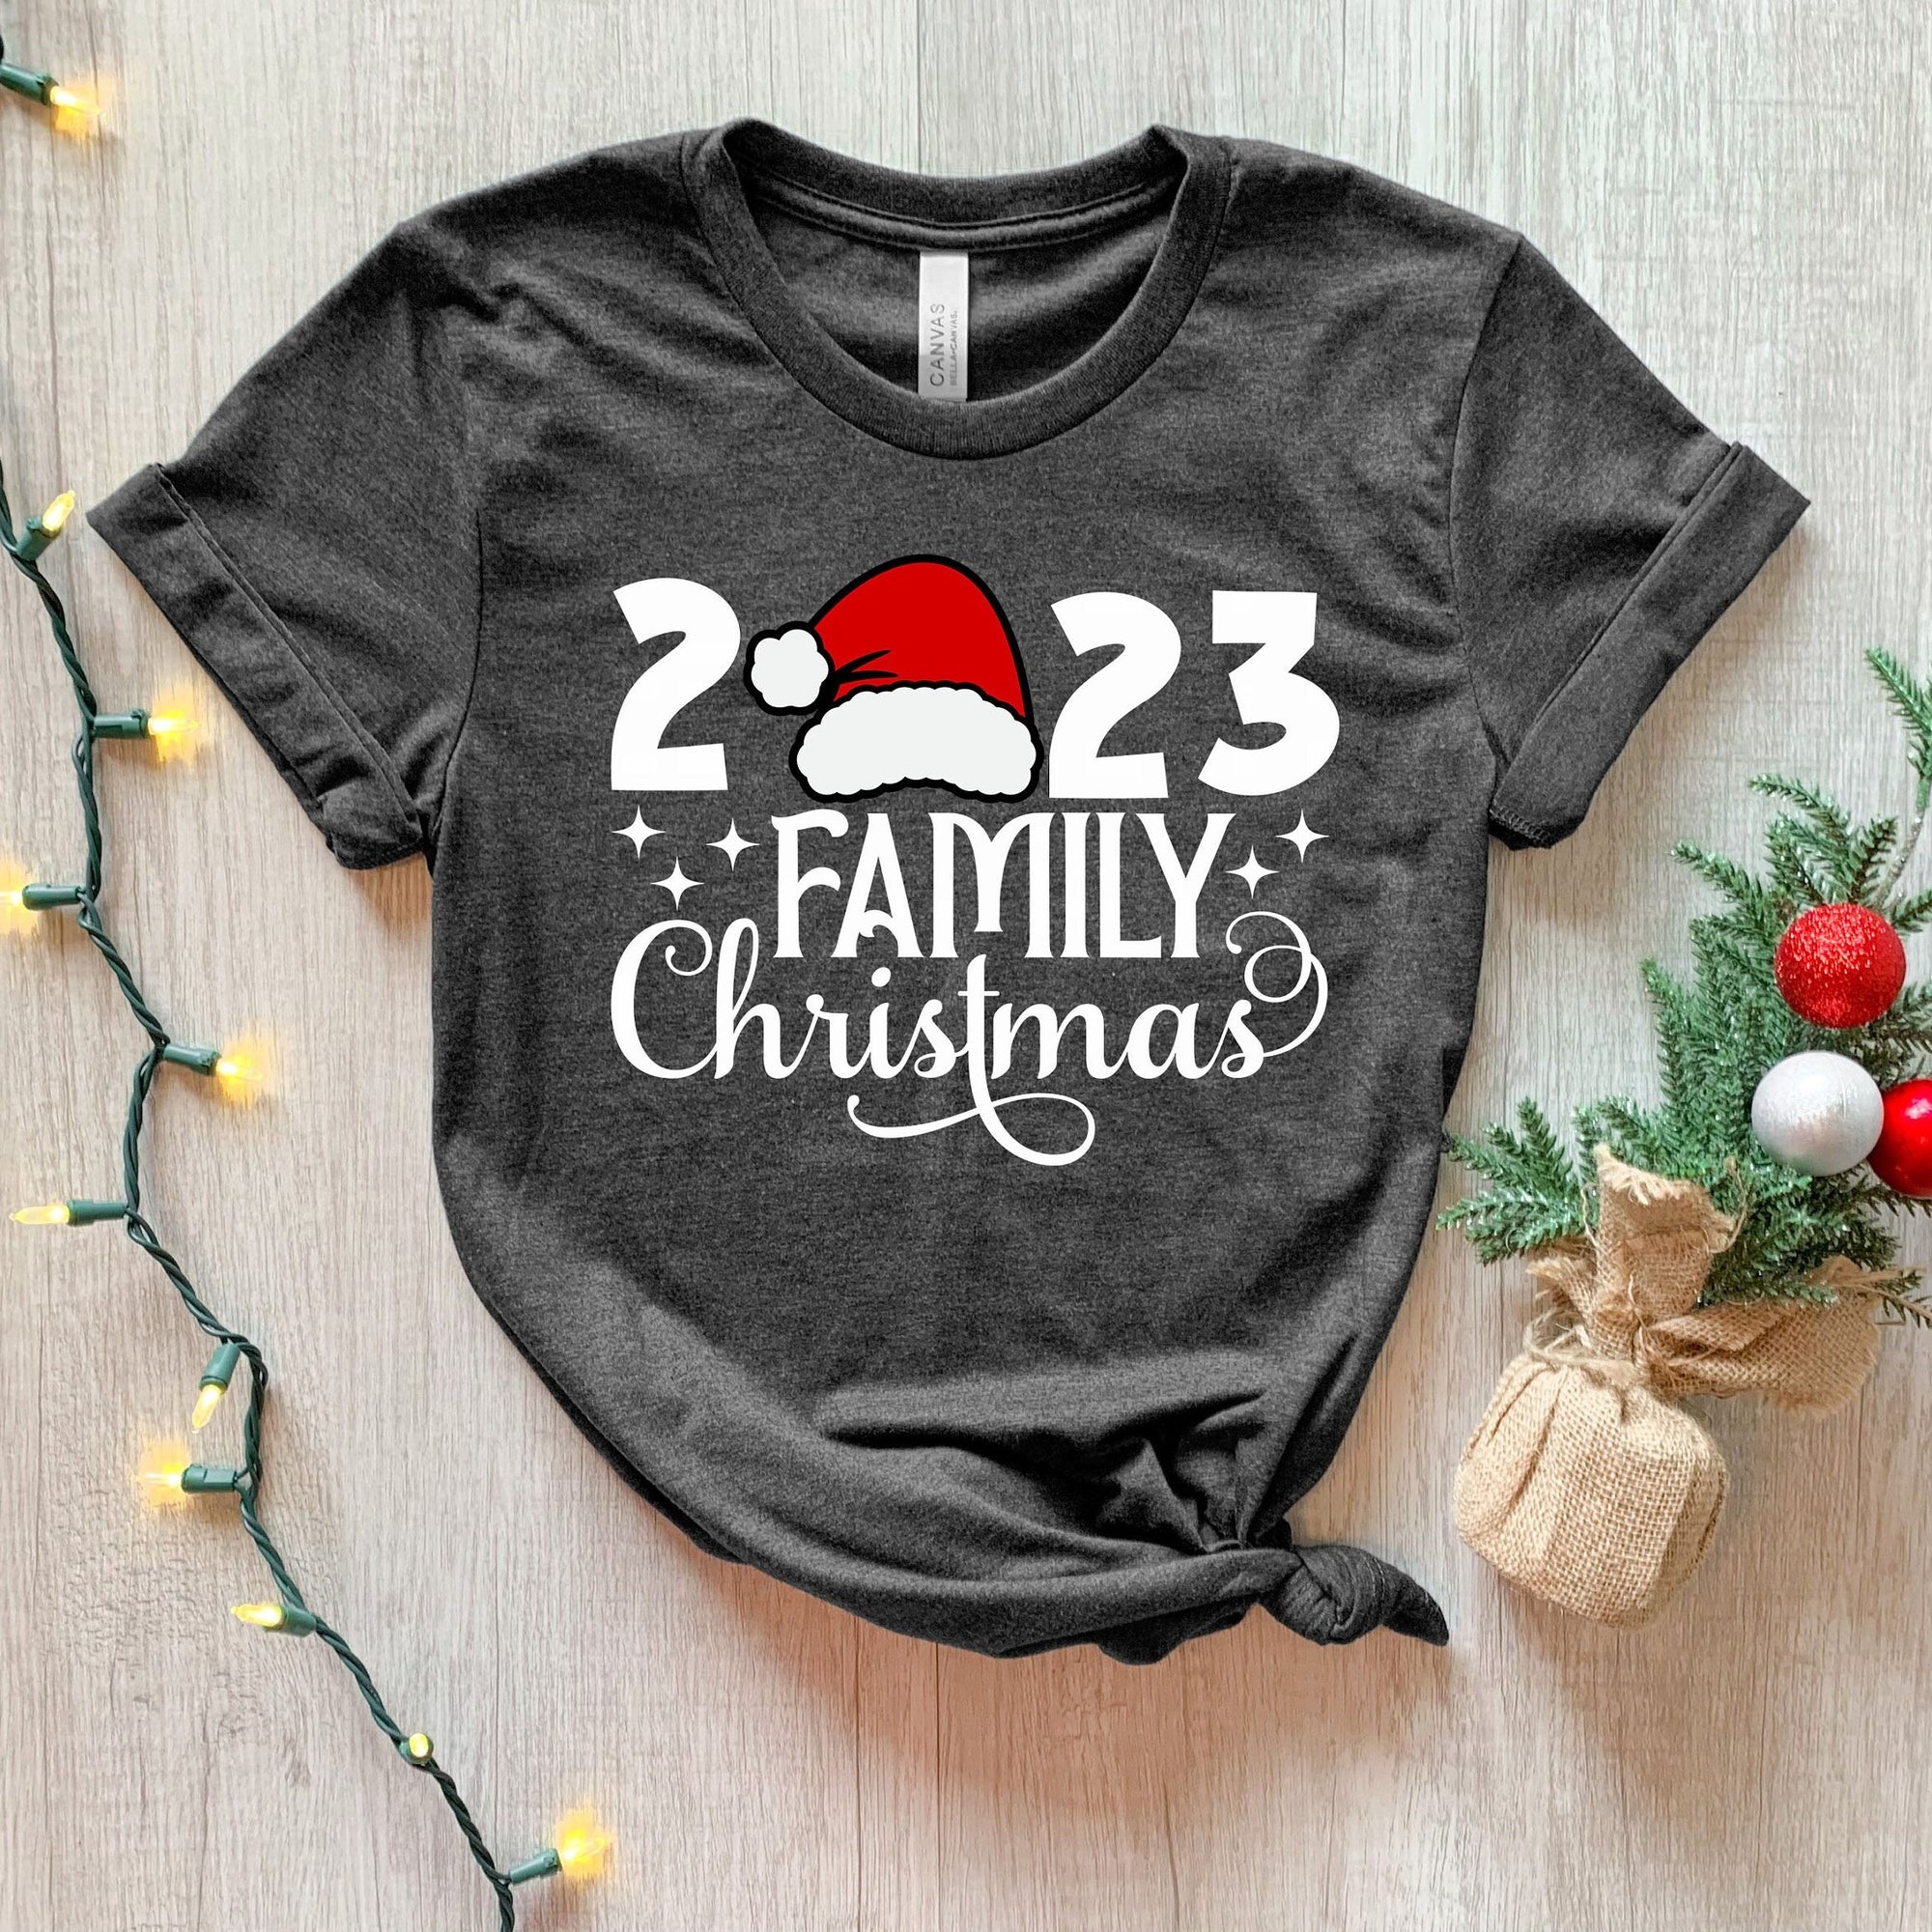 Family Christmas 2023 Shirt, Christmas Shirt, Matching Christmas Santa Shirts, Christmas gift, Christmas Party shirt, Christmas family shirt